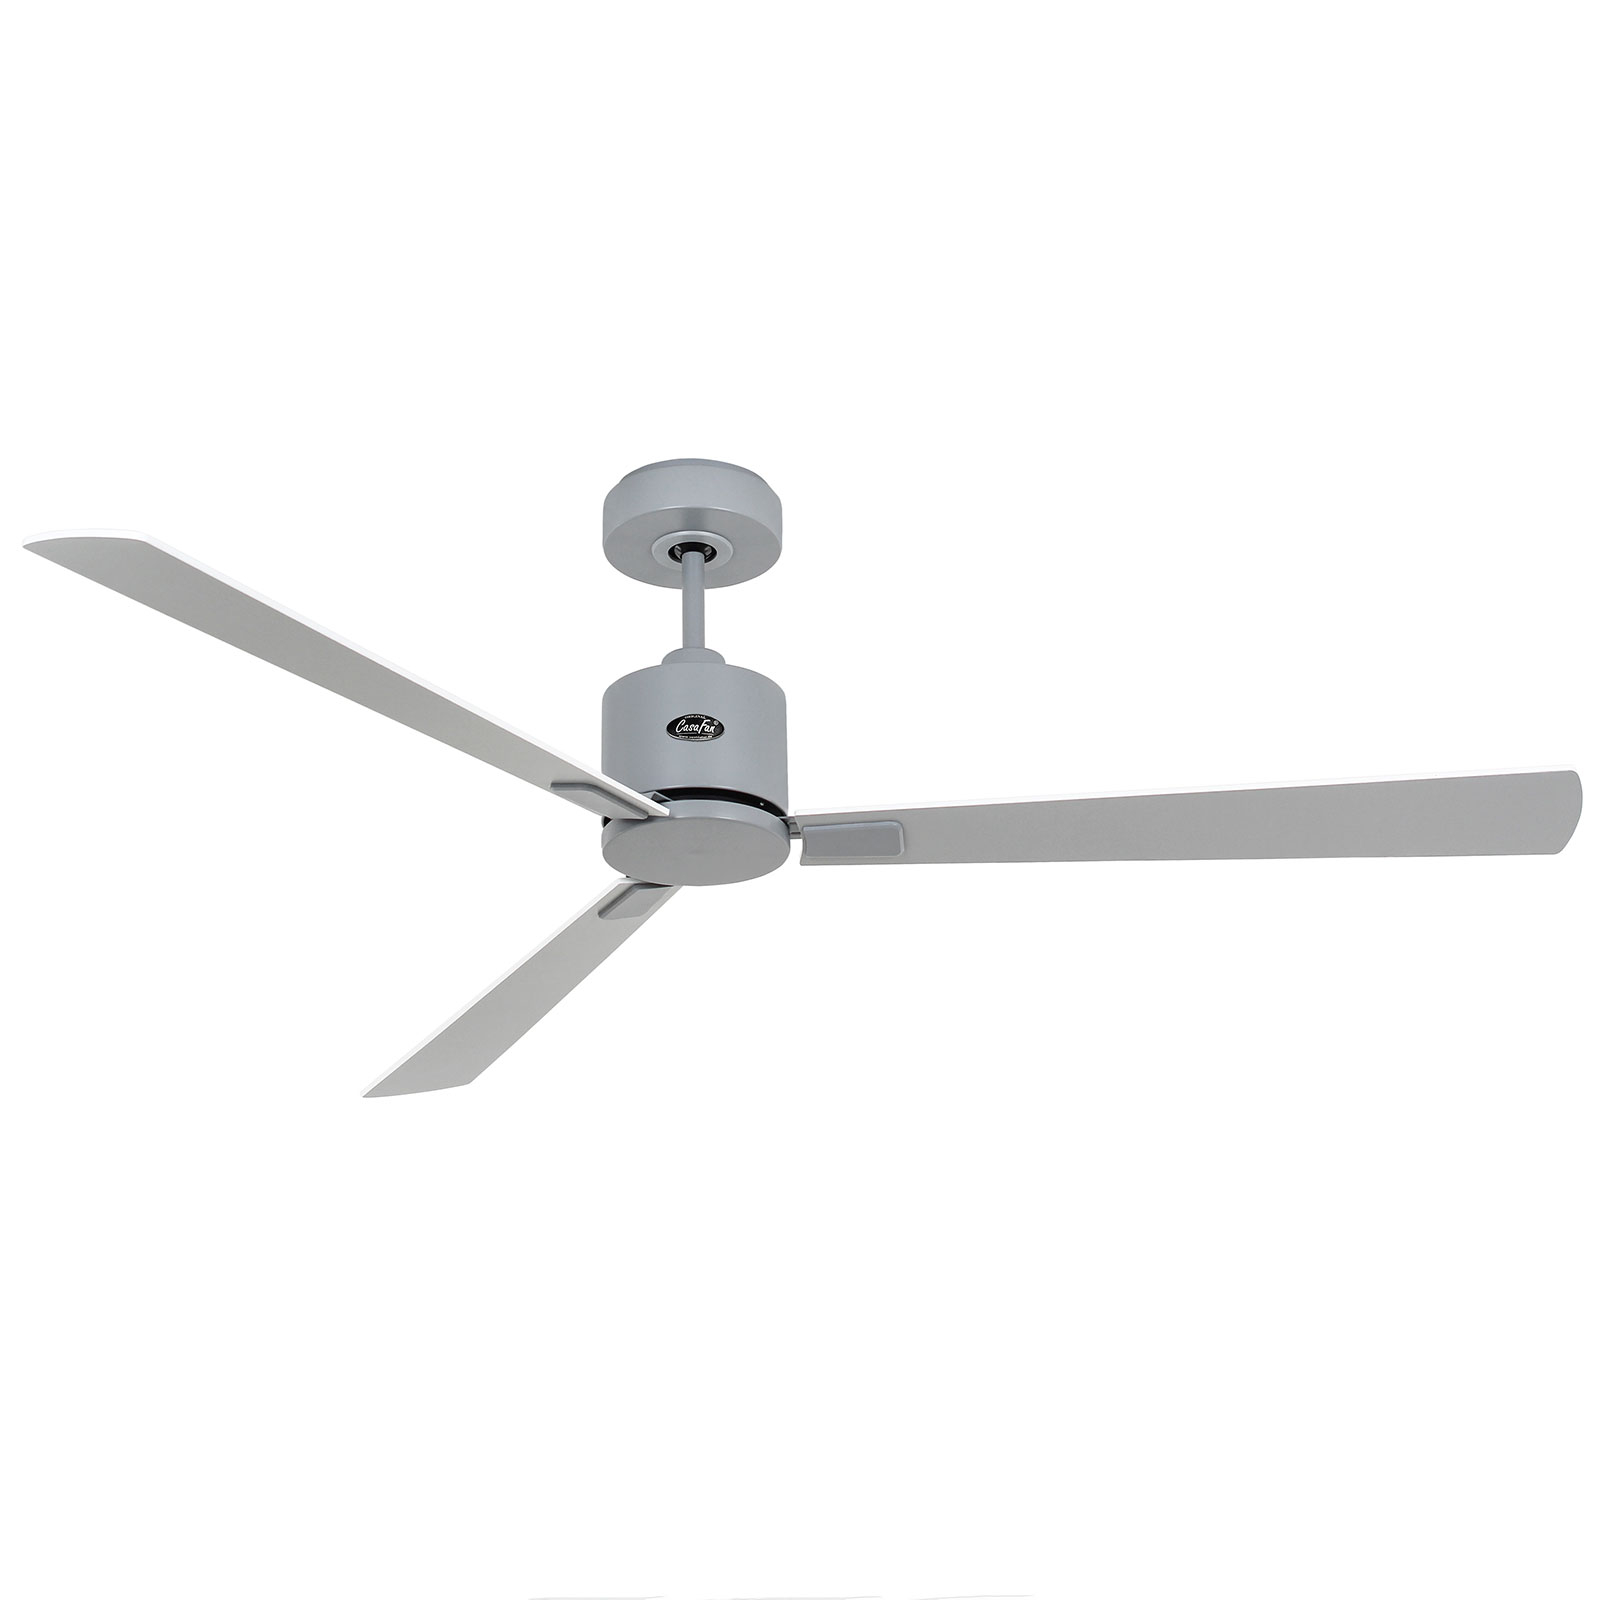 Stropný ventilátor Eco Concept 152 sivý/bielosivý